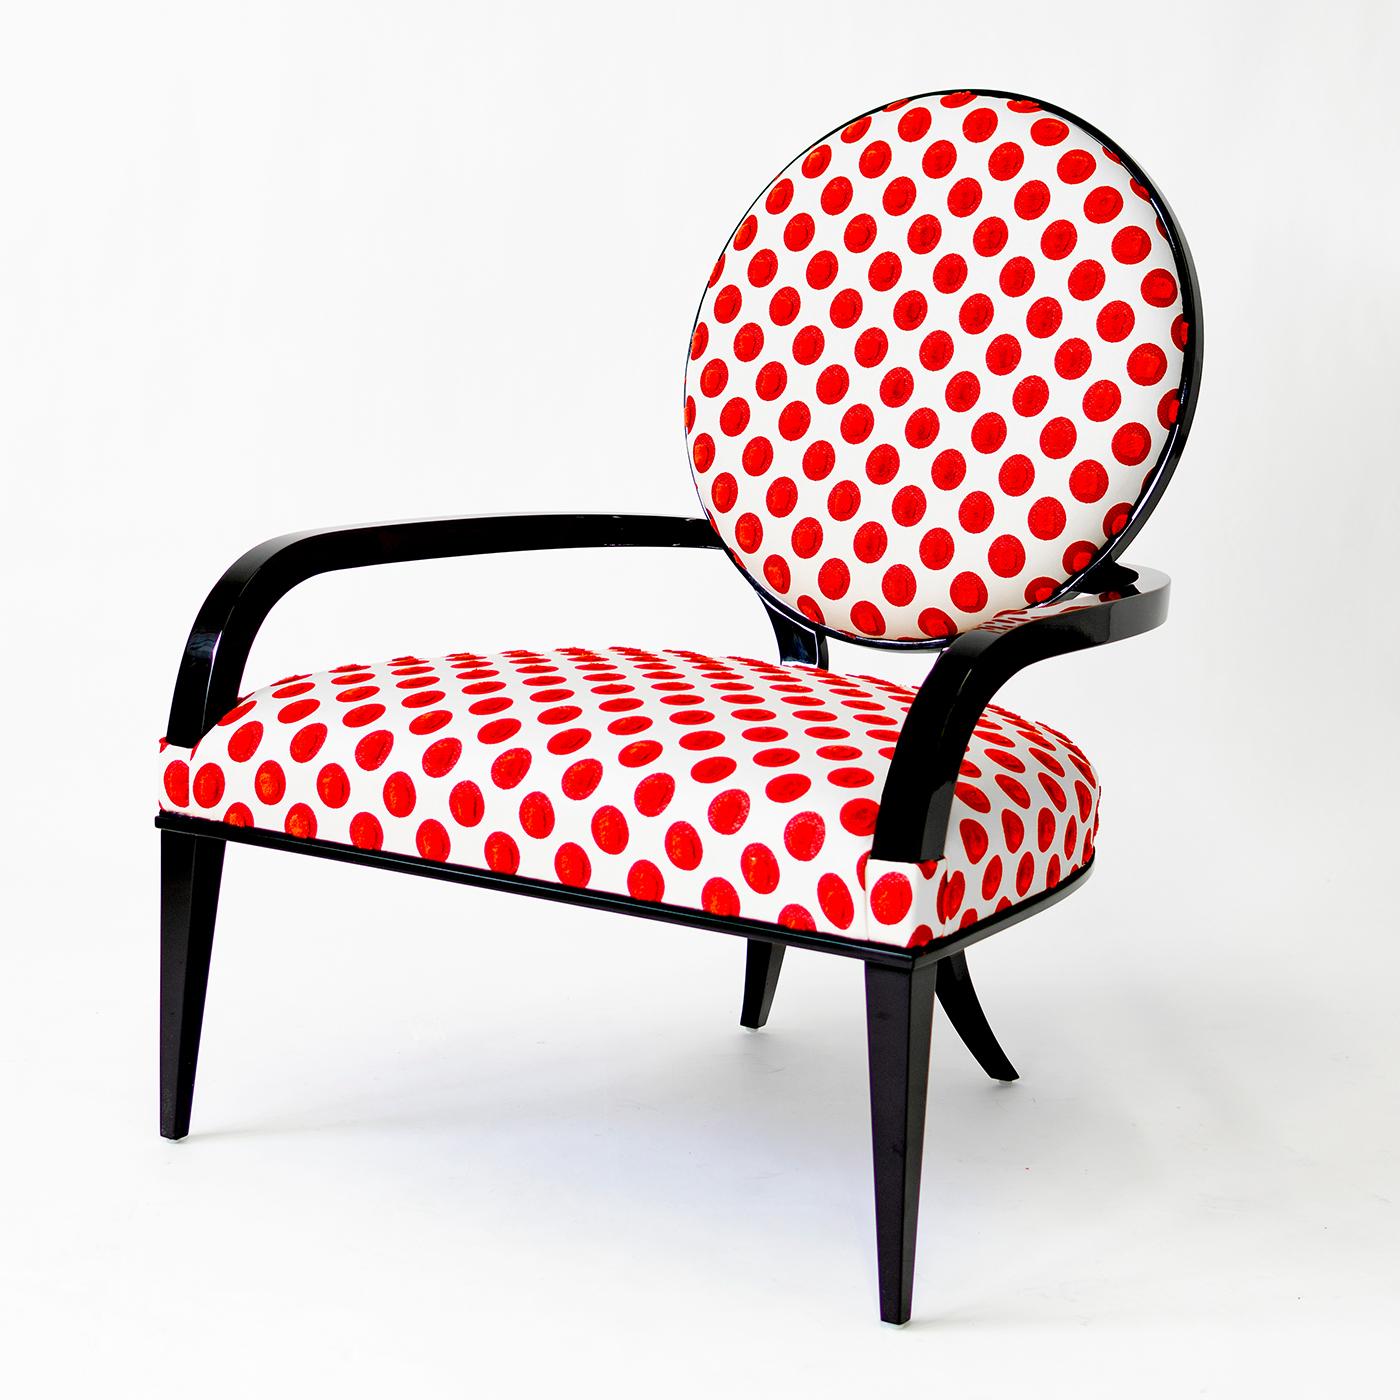 Este exclusivo sillón de G. Ventura combina una silueta elegante con una tapicería juguetona, lo que lo convierte en la elección perfecta para una gran variedad de interiores. La compleja construcción se define por una forma acogedora, realzada por